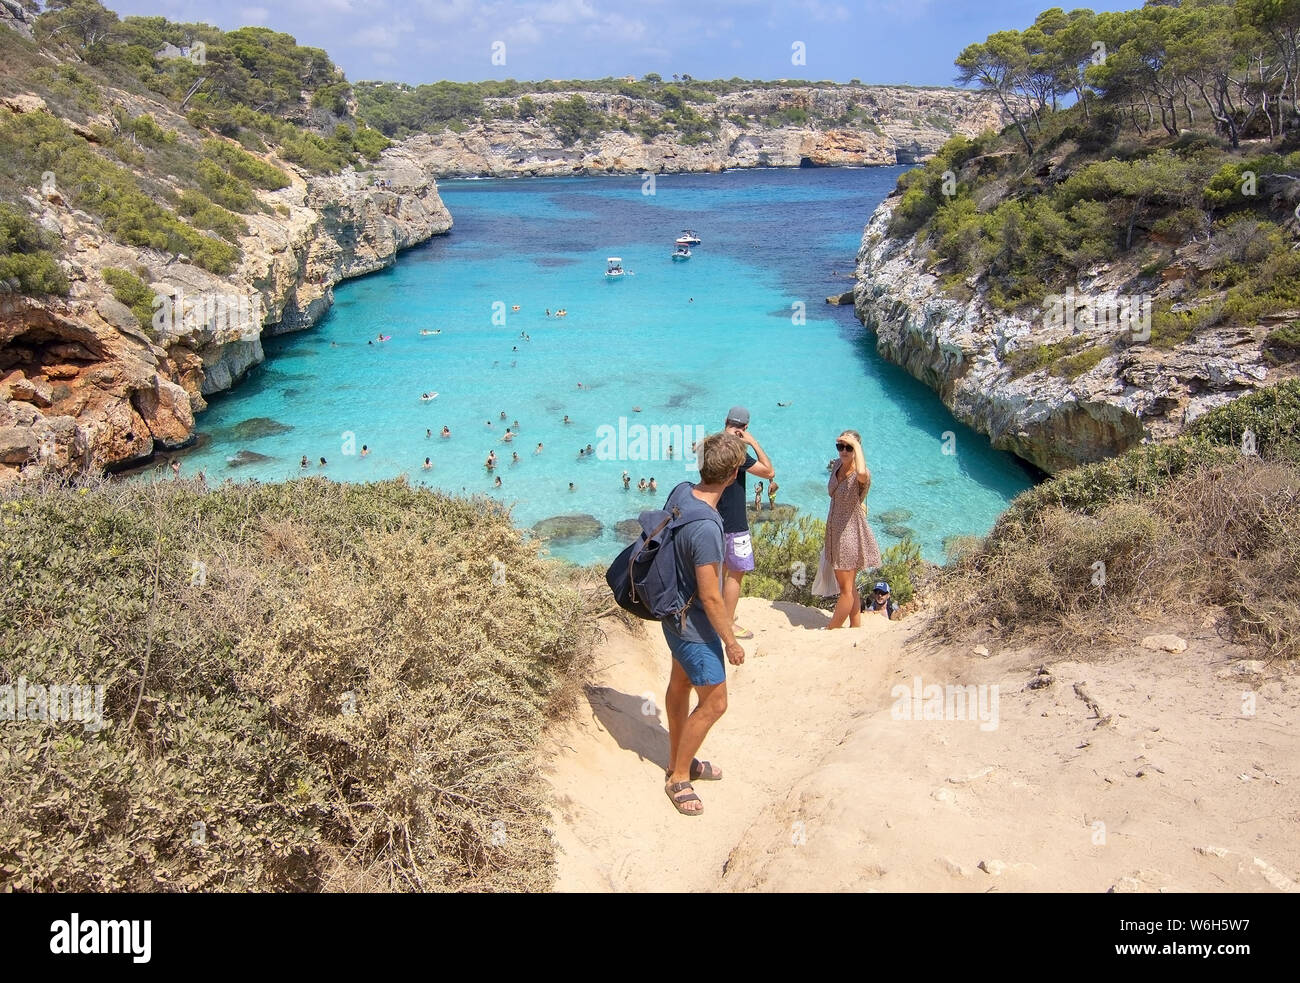 CALO DES MORO, Mallorca, España - Julio 27, 2019: la gente vacilante caminar hasta pequeños extremadamente Turquoise Bay y acantilados escarpados en un soleado día de julio Foto de stock